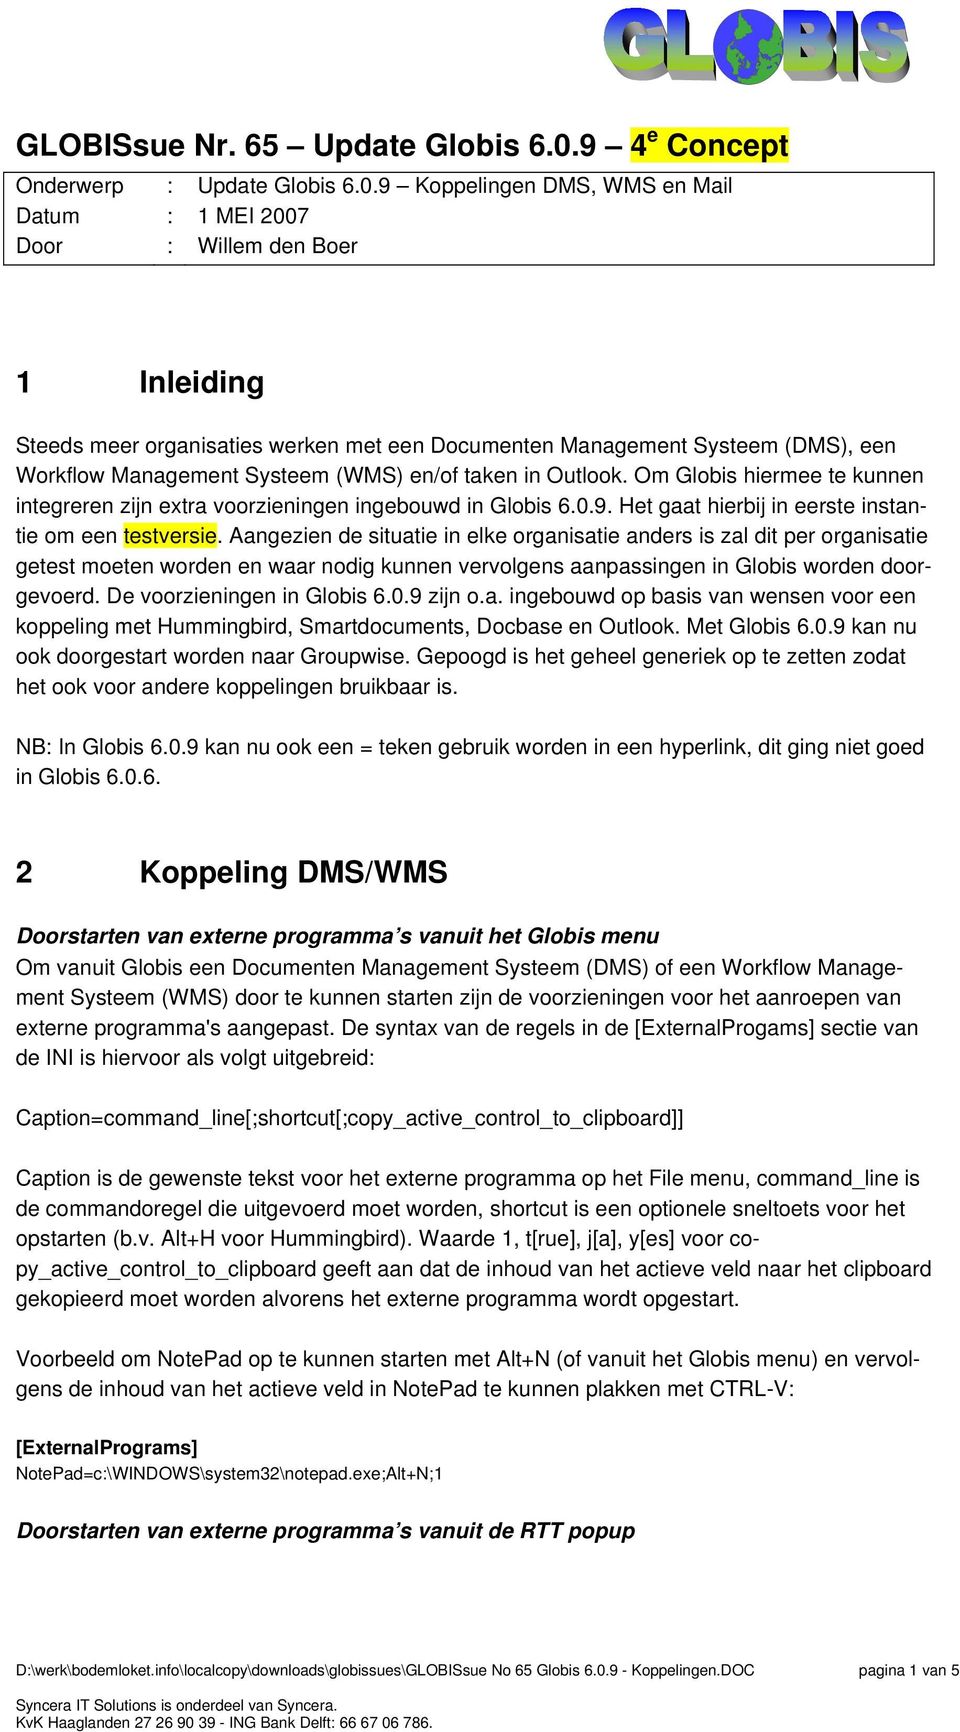 9 Koppelingen DMS, WMS en Mail 1 MEI 2007 Willem den Boer 1 Inleiding Steeds meer organisaties werken met een Documenten Management Systeem (DMS), een Workflow Management Systeem (WMS) en/of taken in